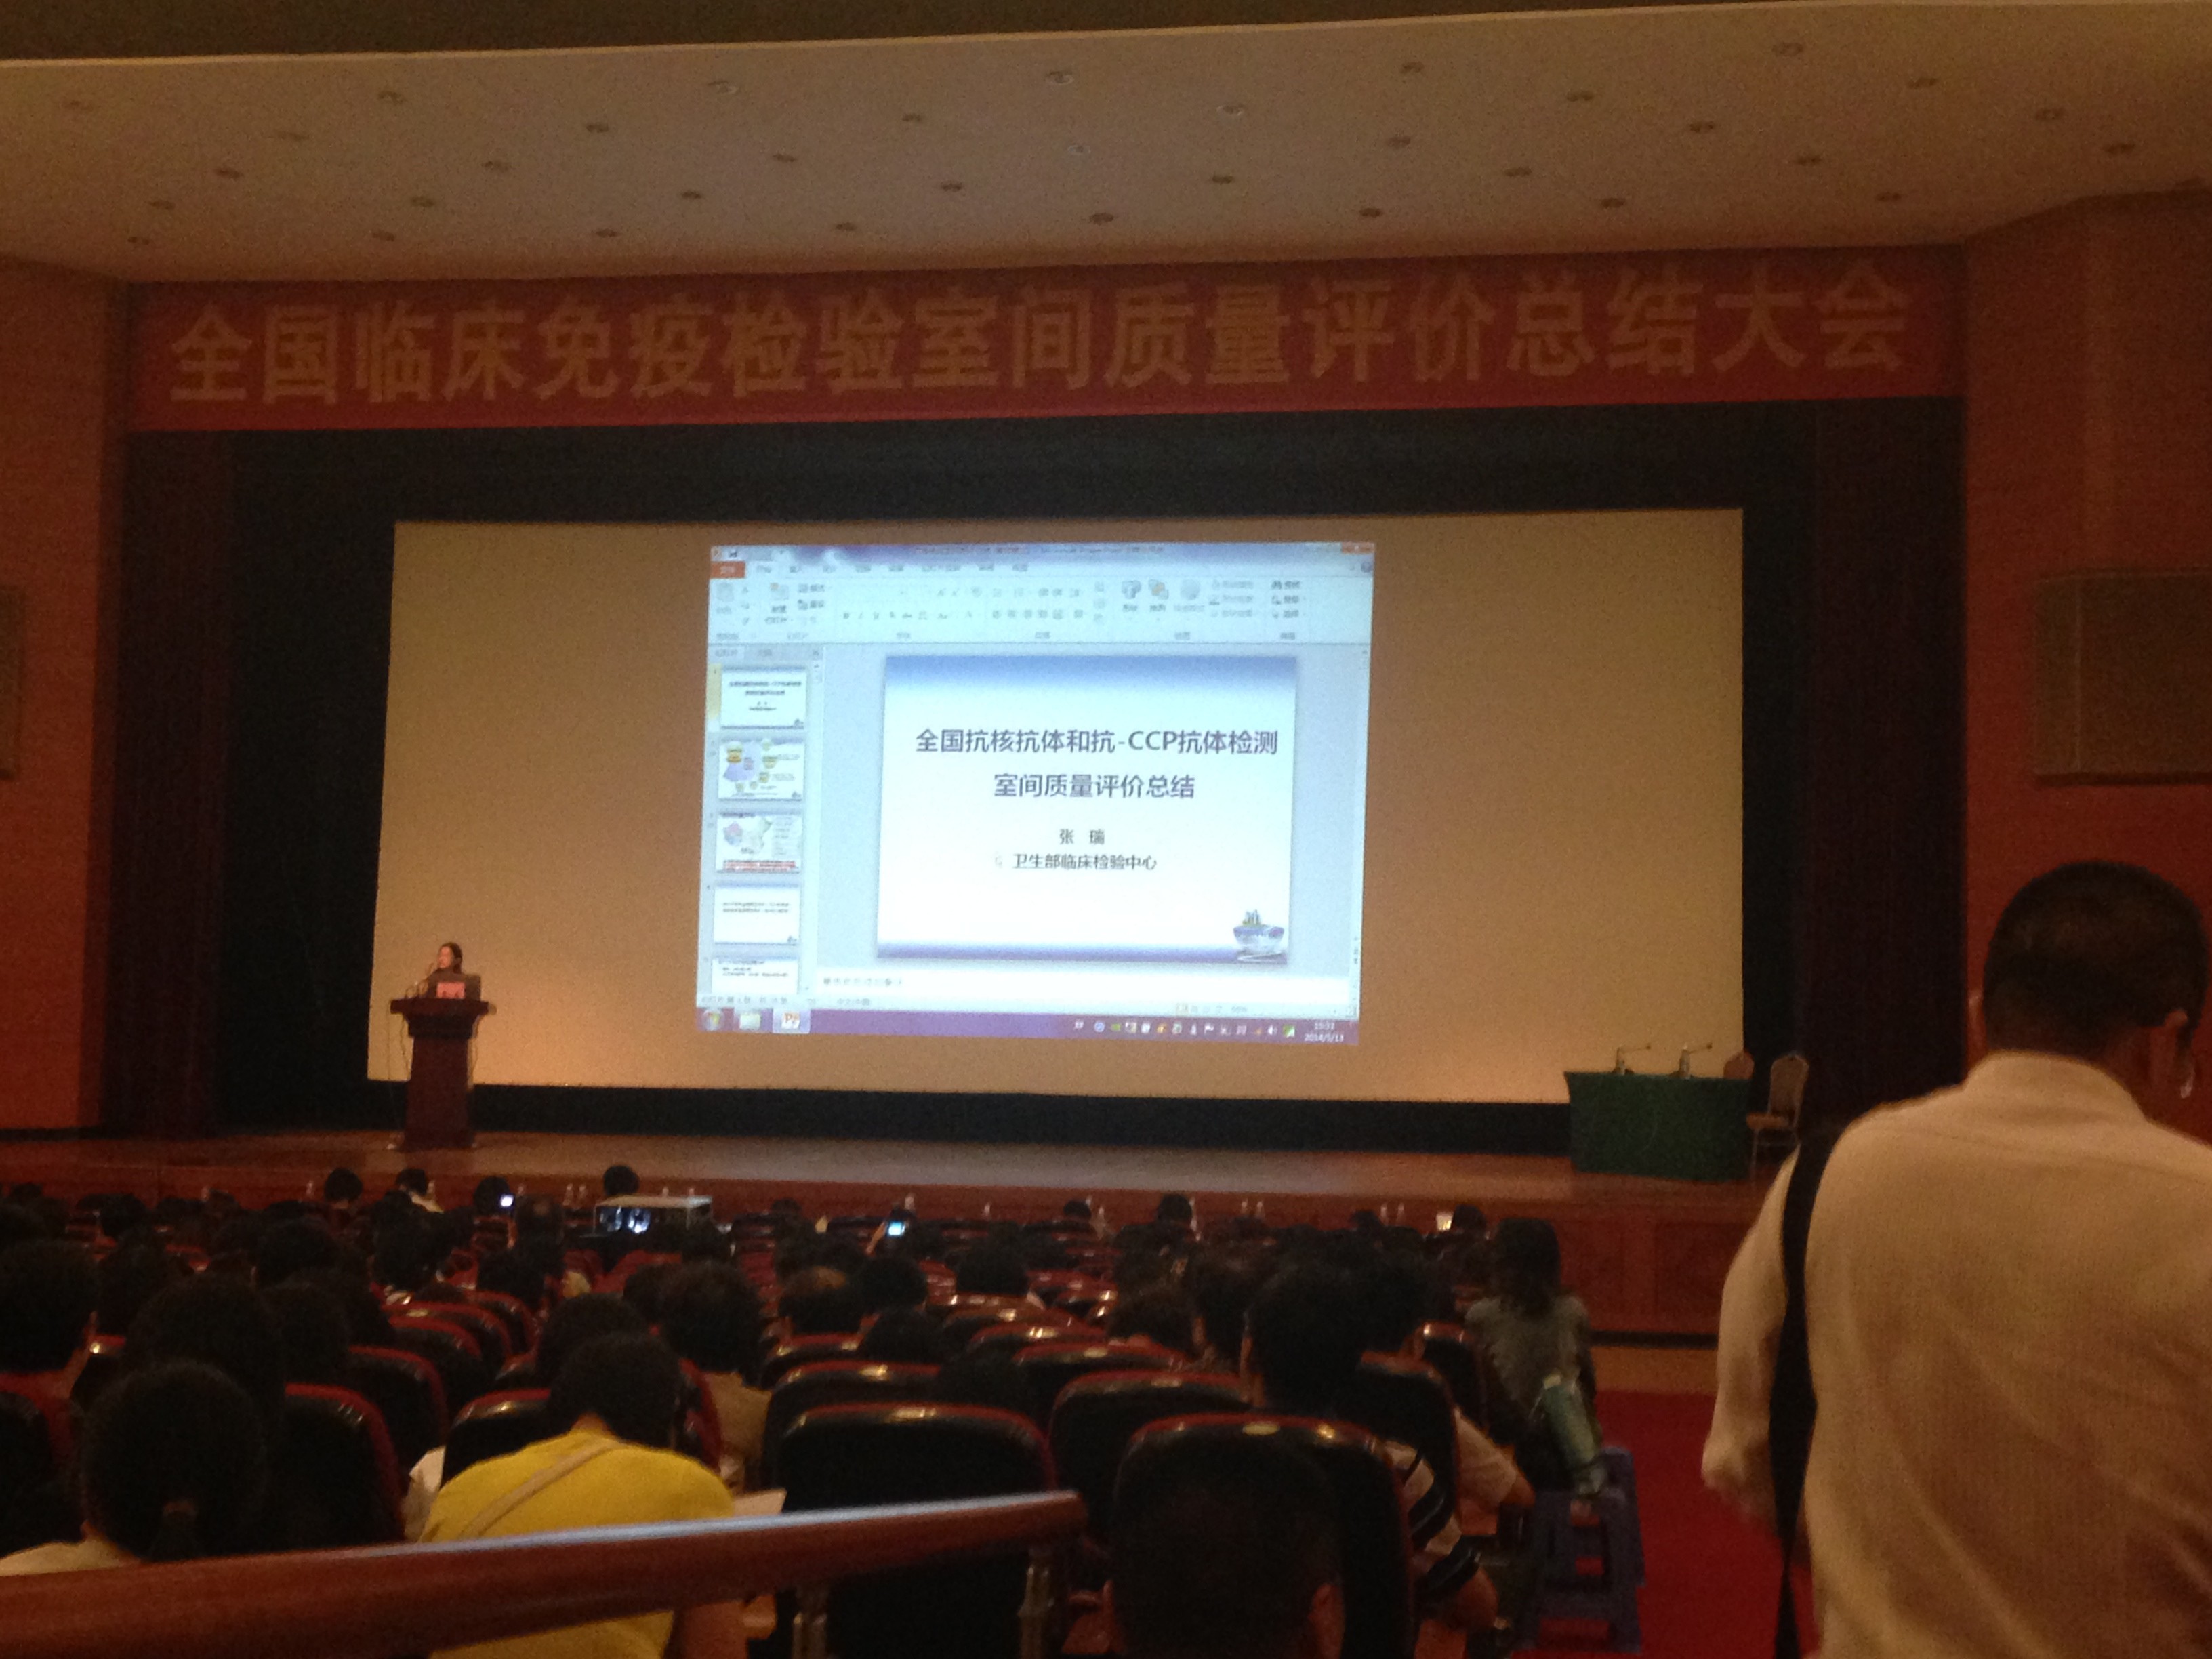 张江药谷主题活动”亮相第二届“上交会”，获得广泛好评。